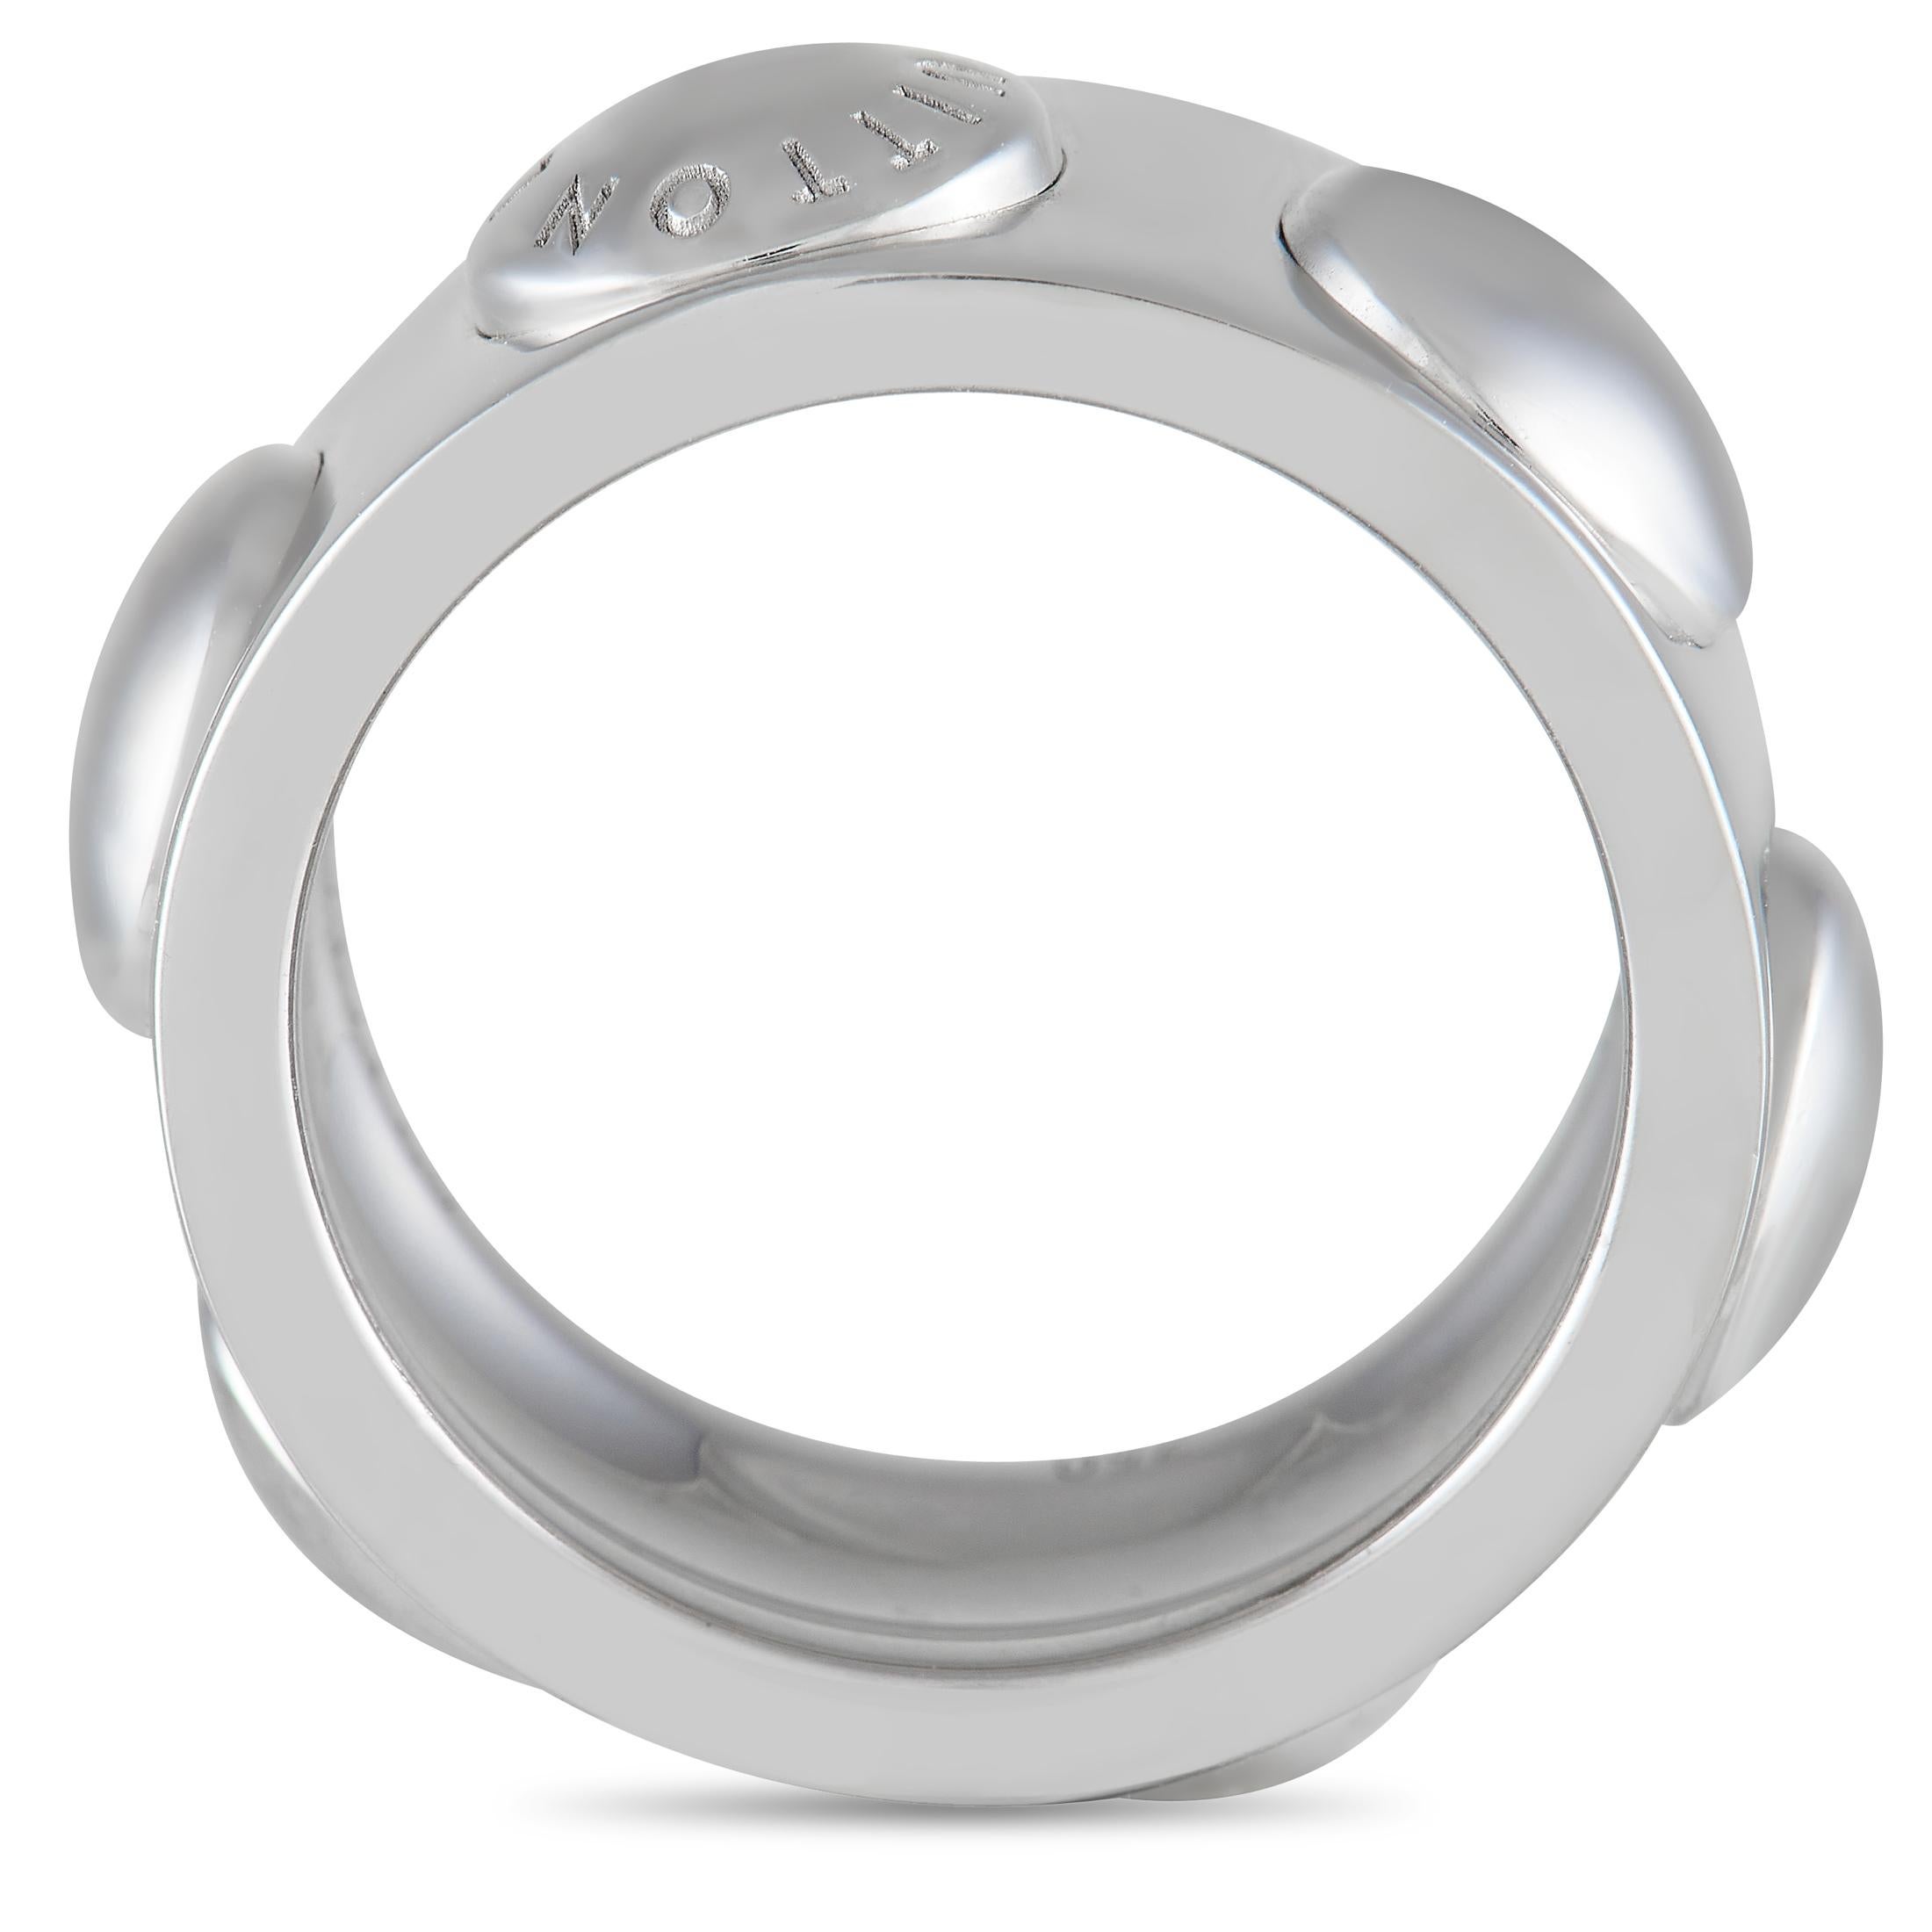 Louis Vuitton - Empreinte Ring White Gold and Diamonds - Grey - Unisex - Size: 55 - Luxury